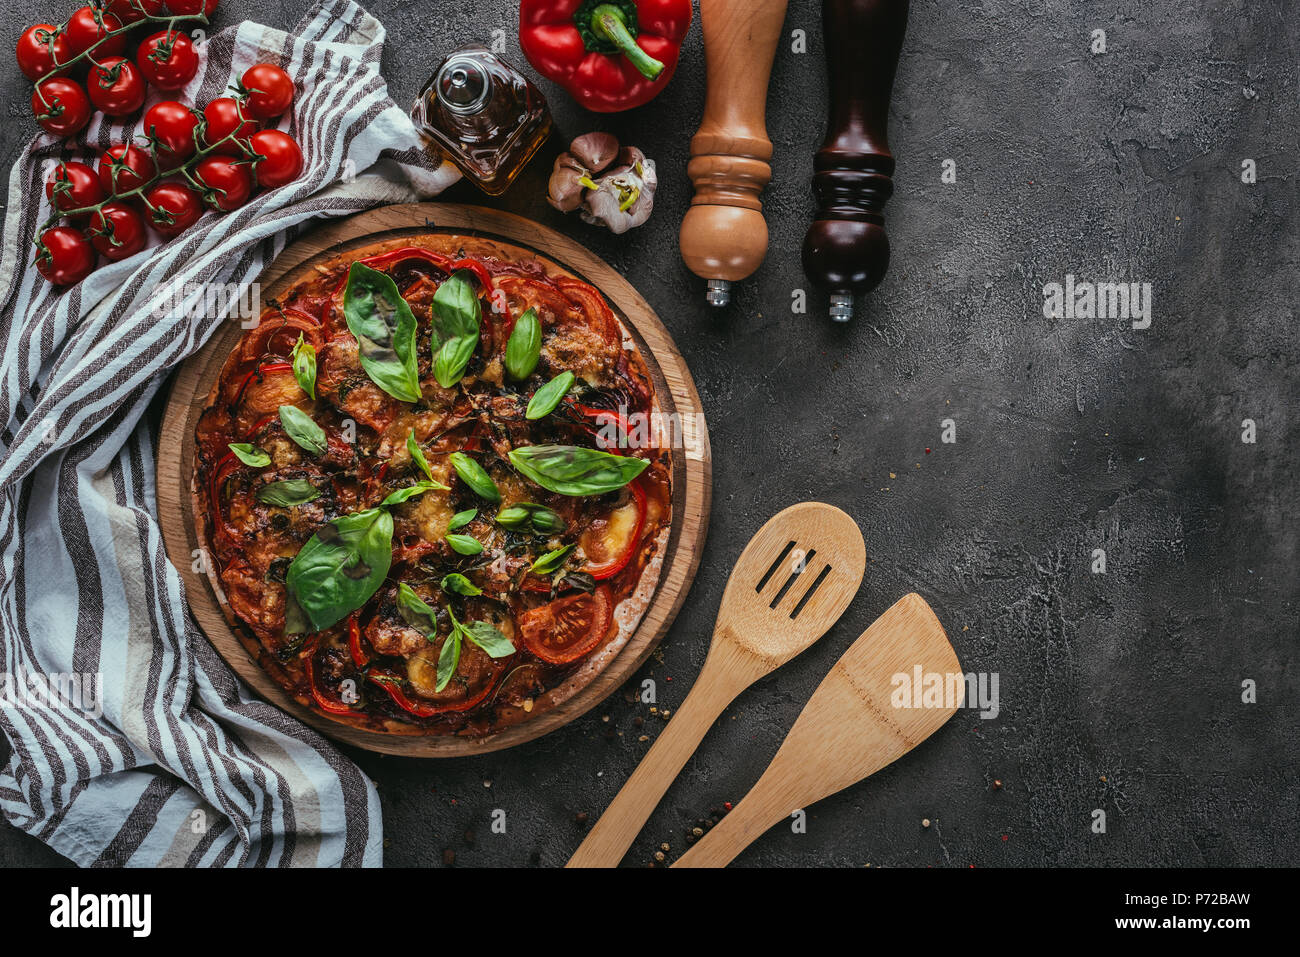 Vue de dessus de la pizza avec des spatules en bois sur table béton Banque D'Images